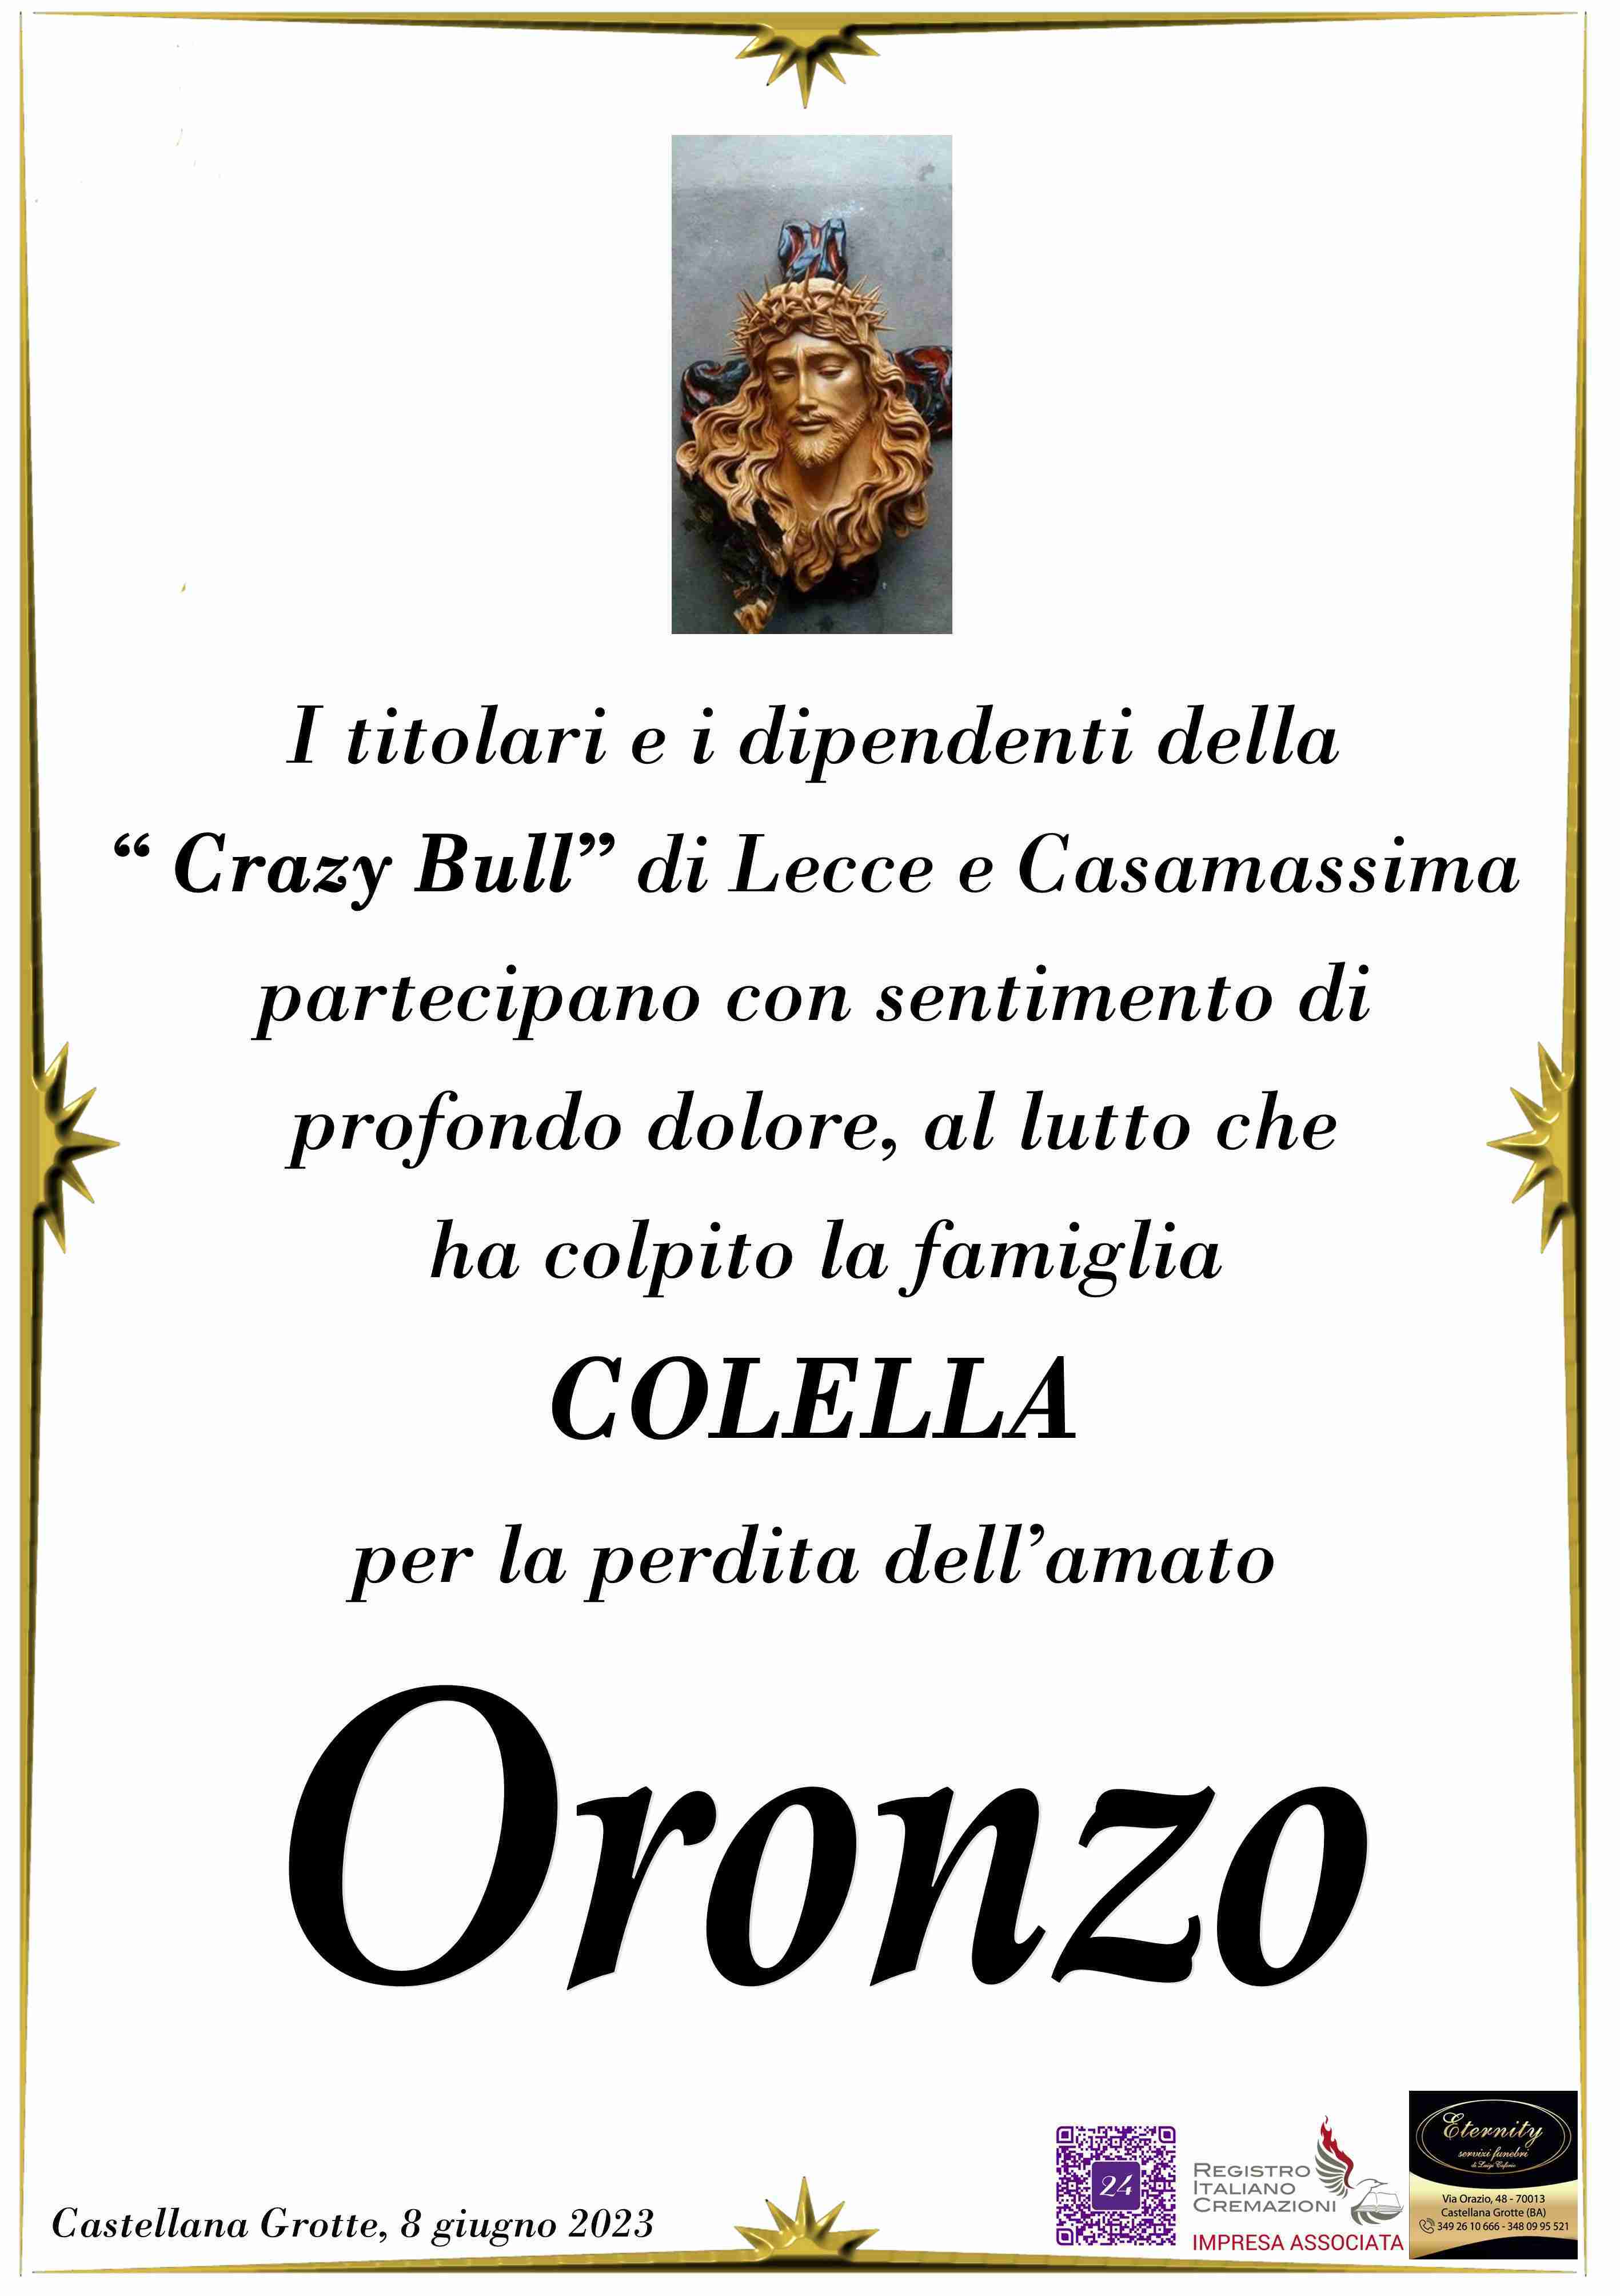 Oronzo Colella